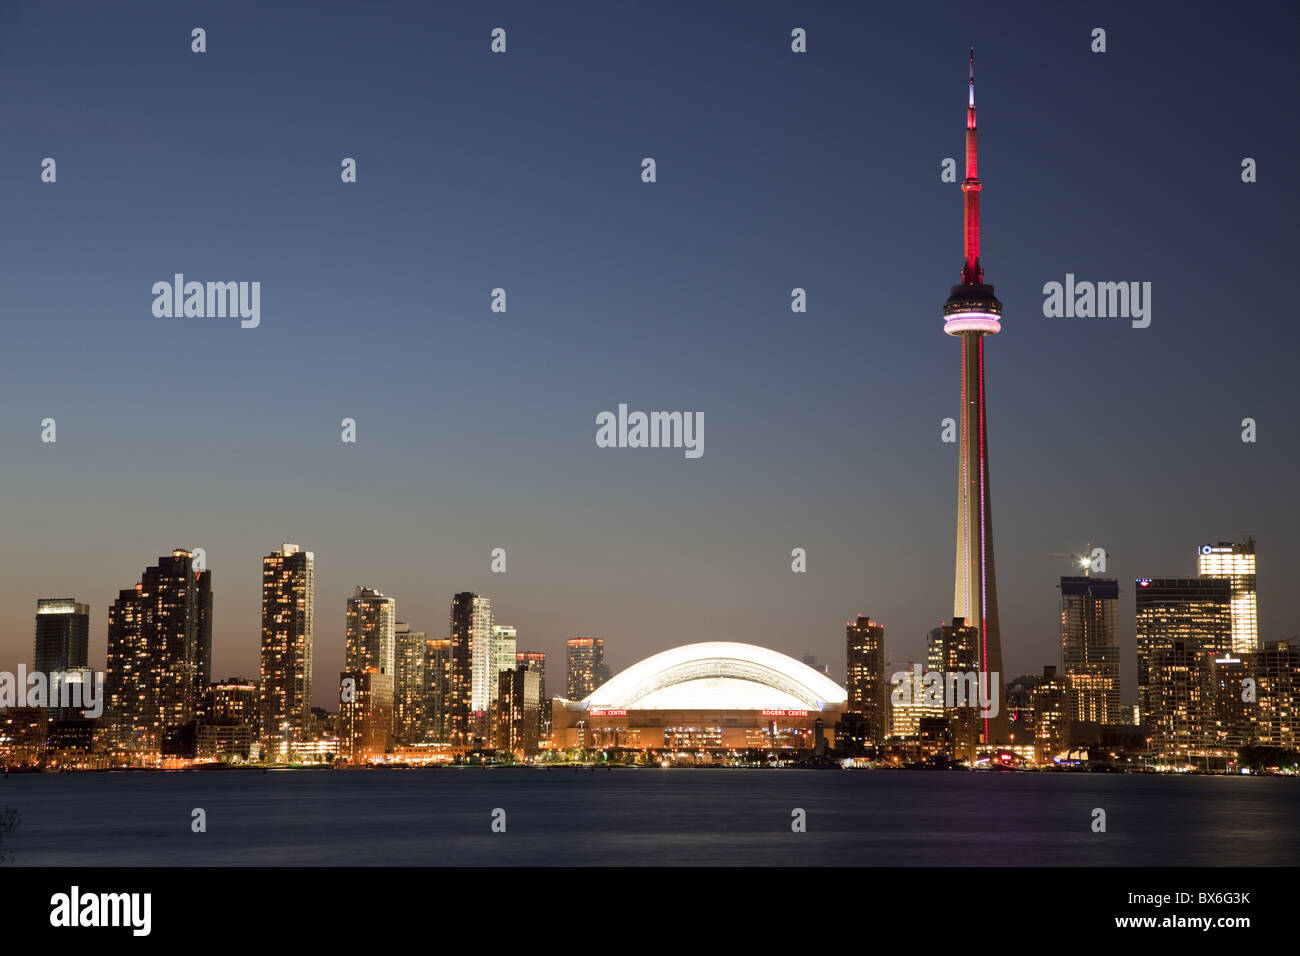 Toits de ville avec la Tour CN et le Centre Rogers, précédemment le Skydome, Toronto, Ontario, Canada, Amérique du Nord Banque D'Images